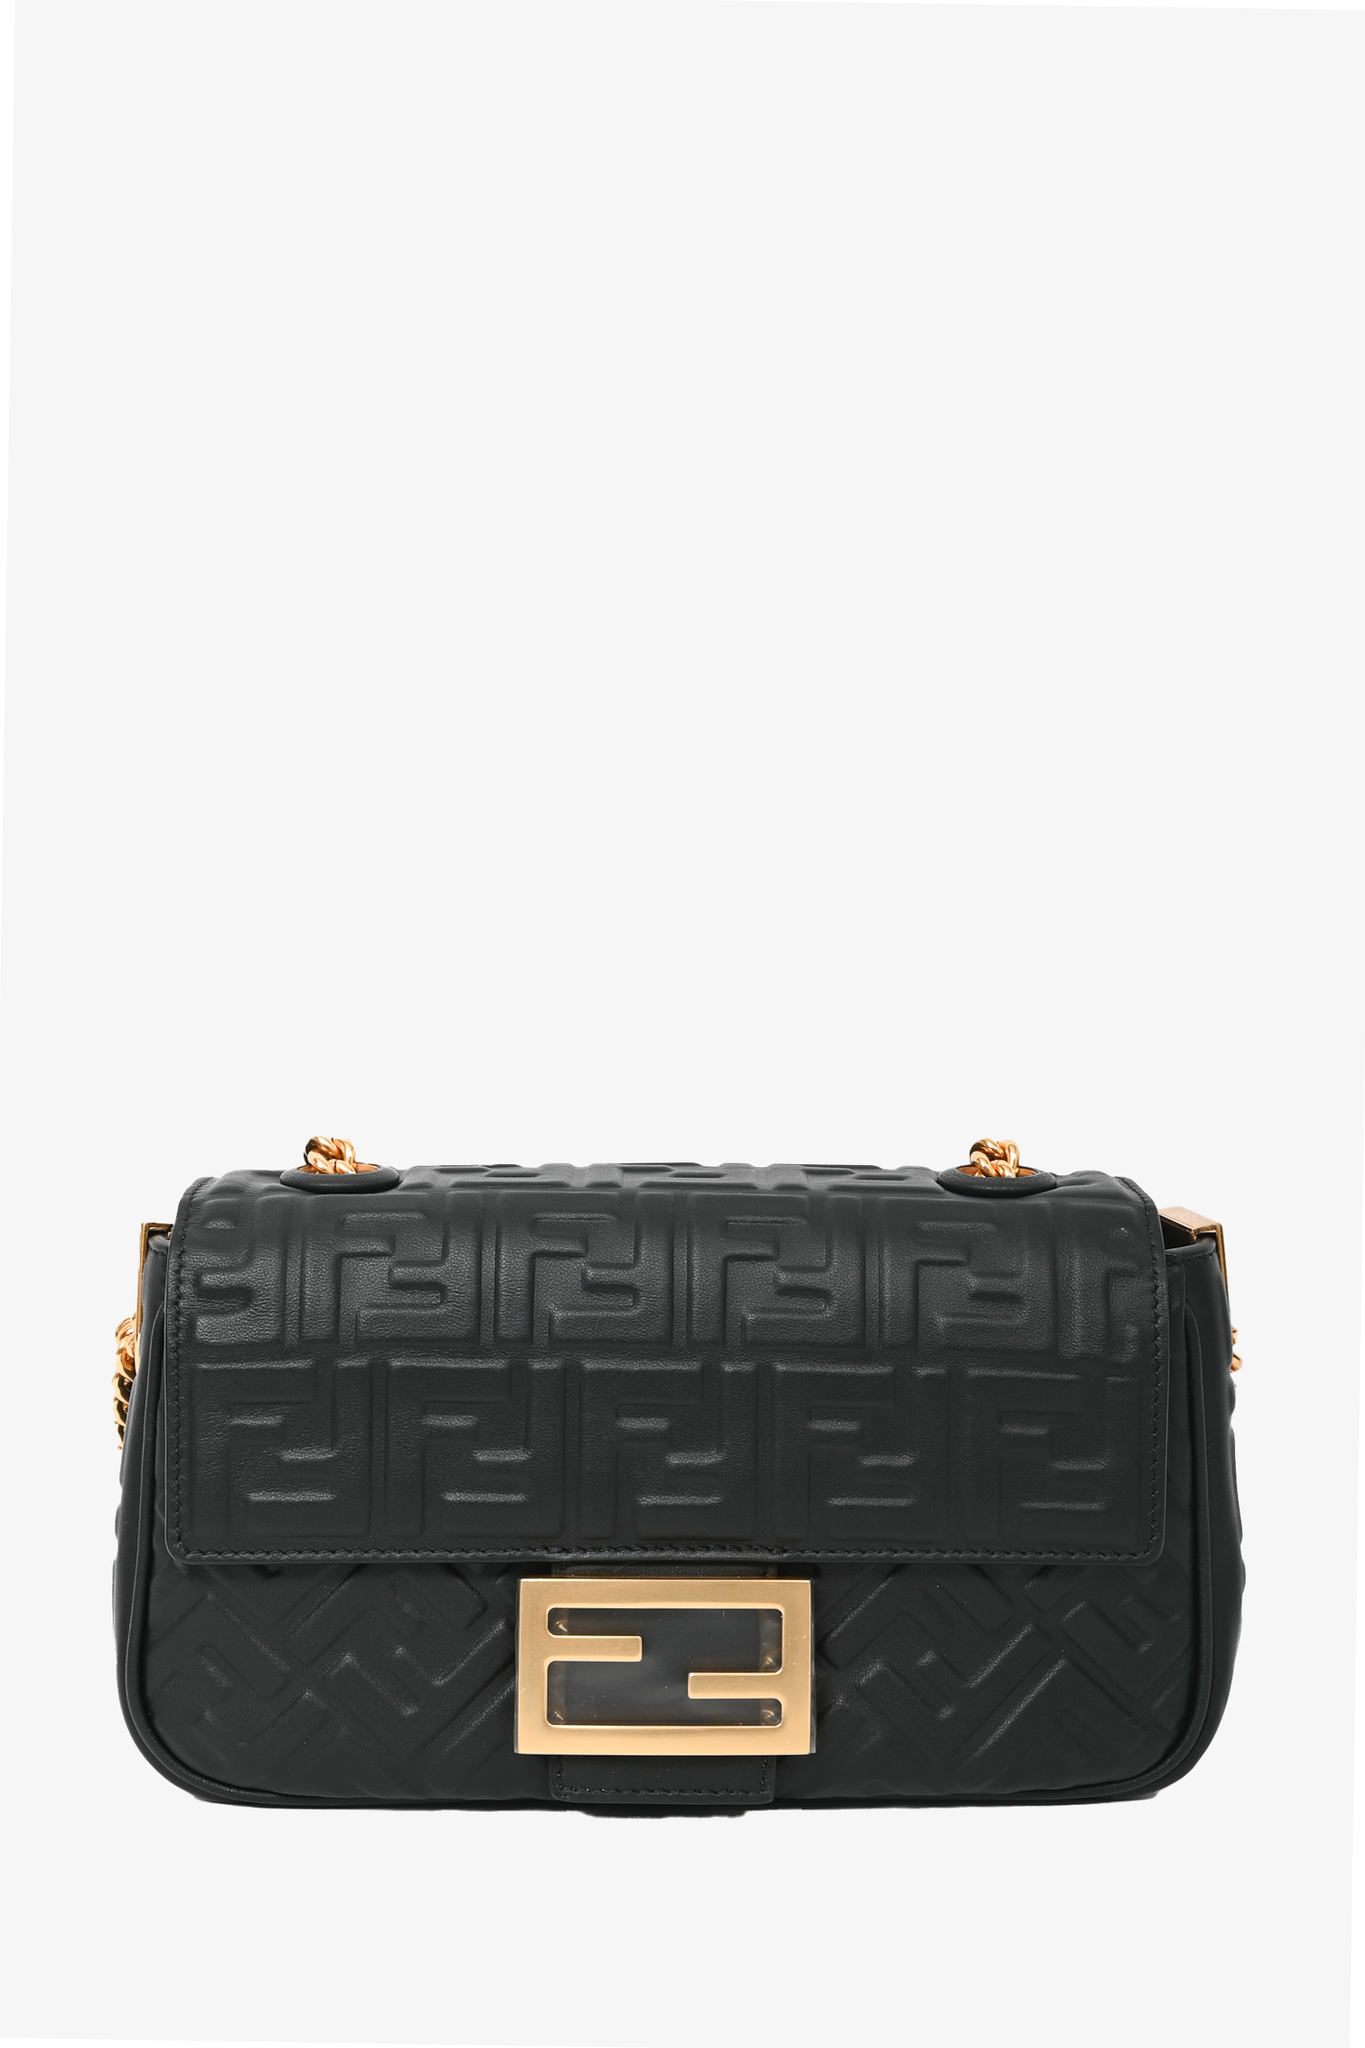 Fendi Black 'FF' Embossed Leather Small Baguette Shoulder Bag